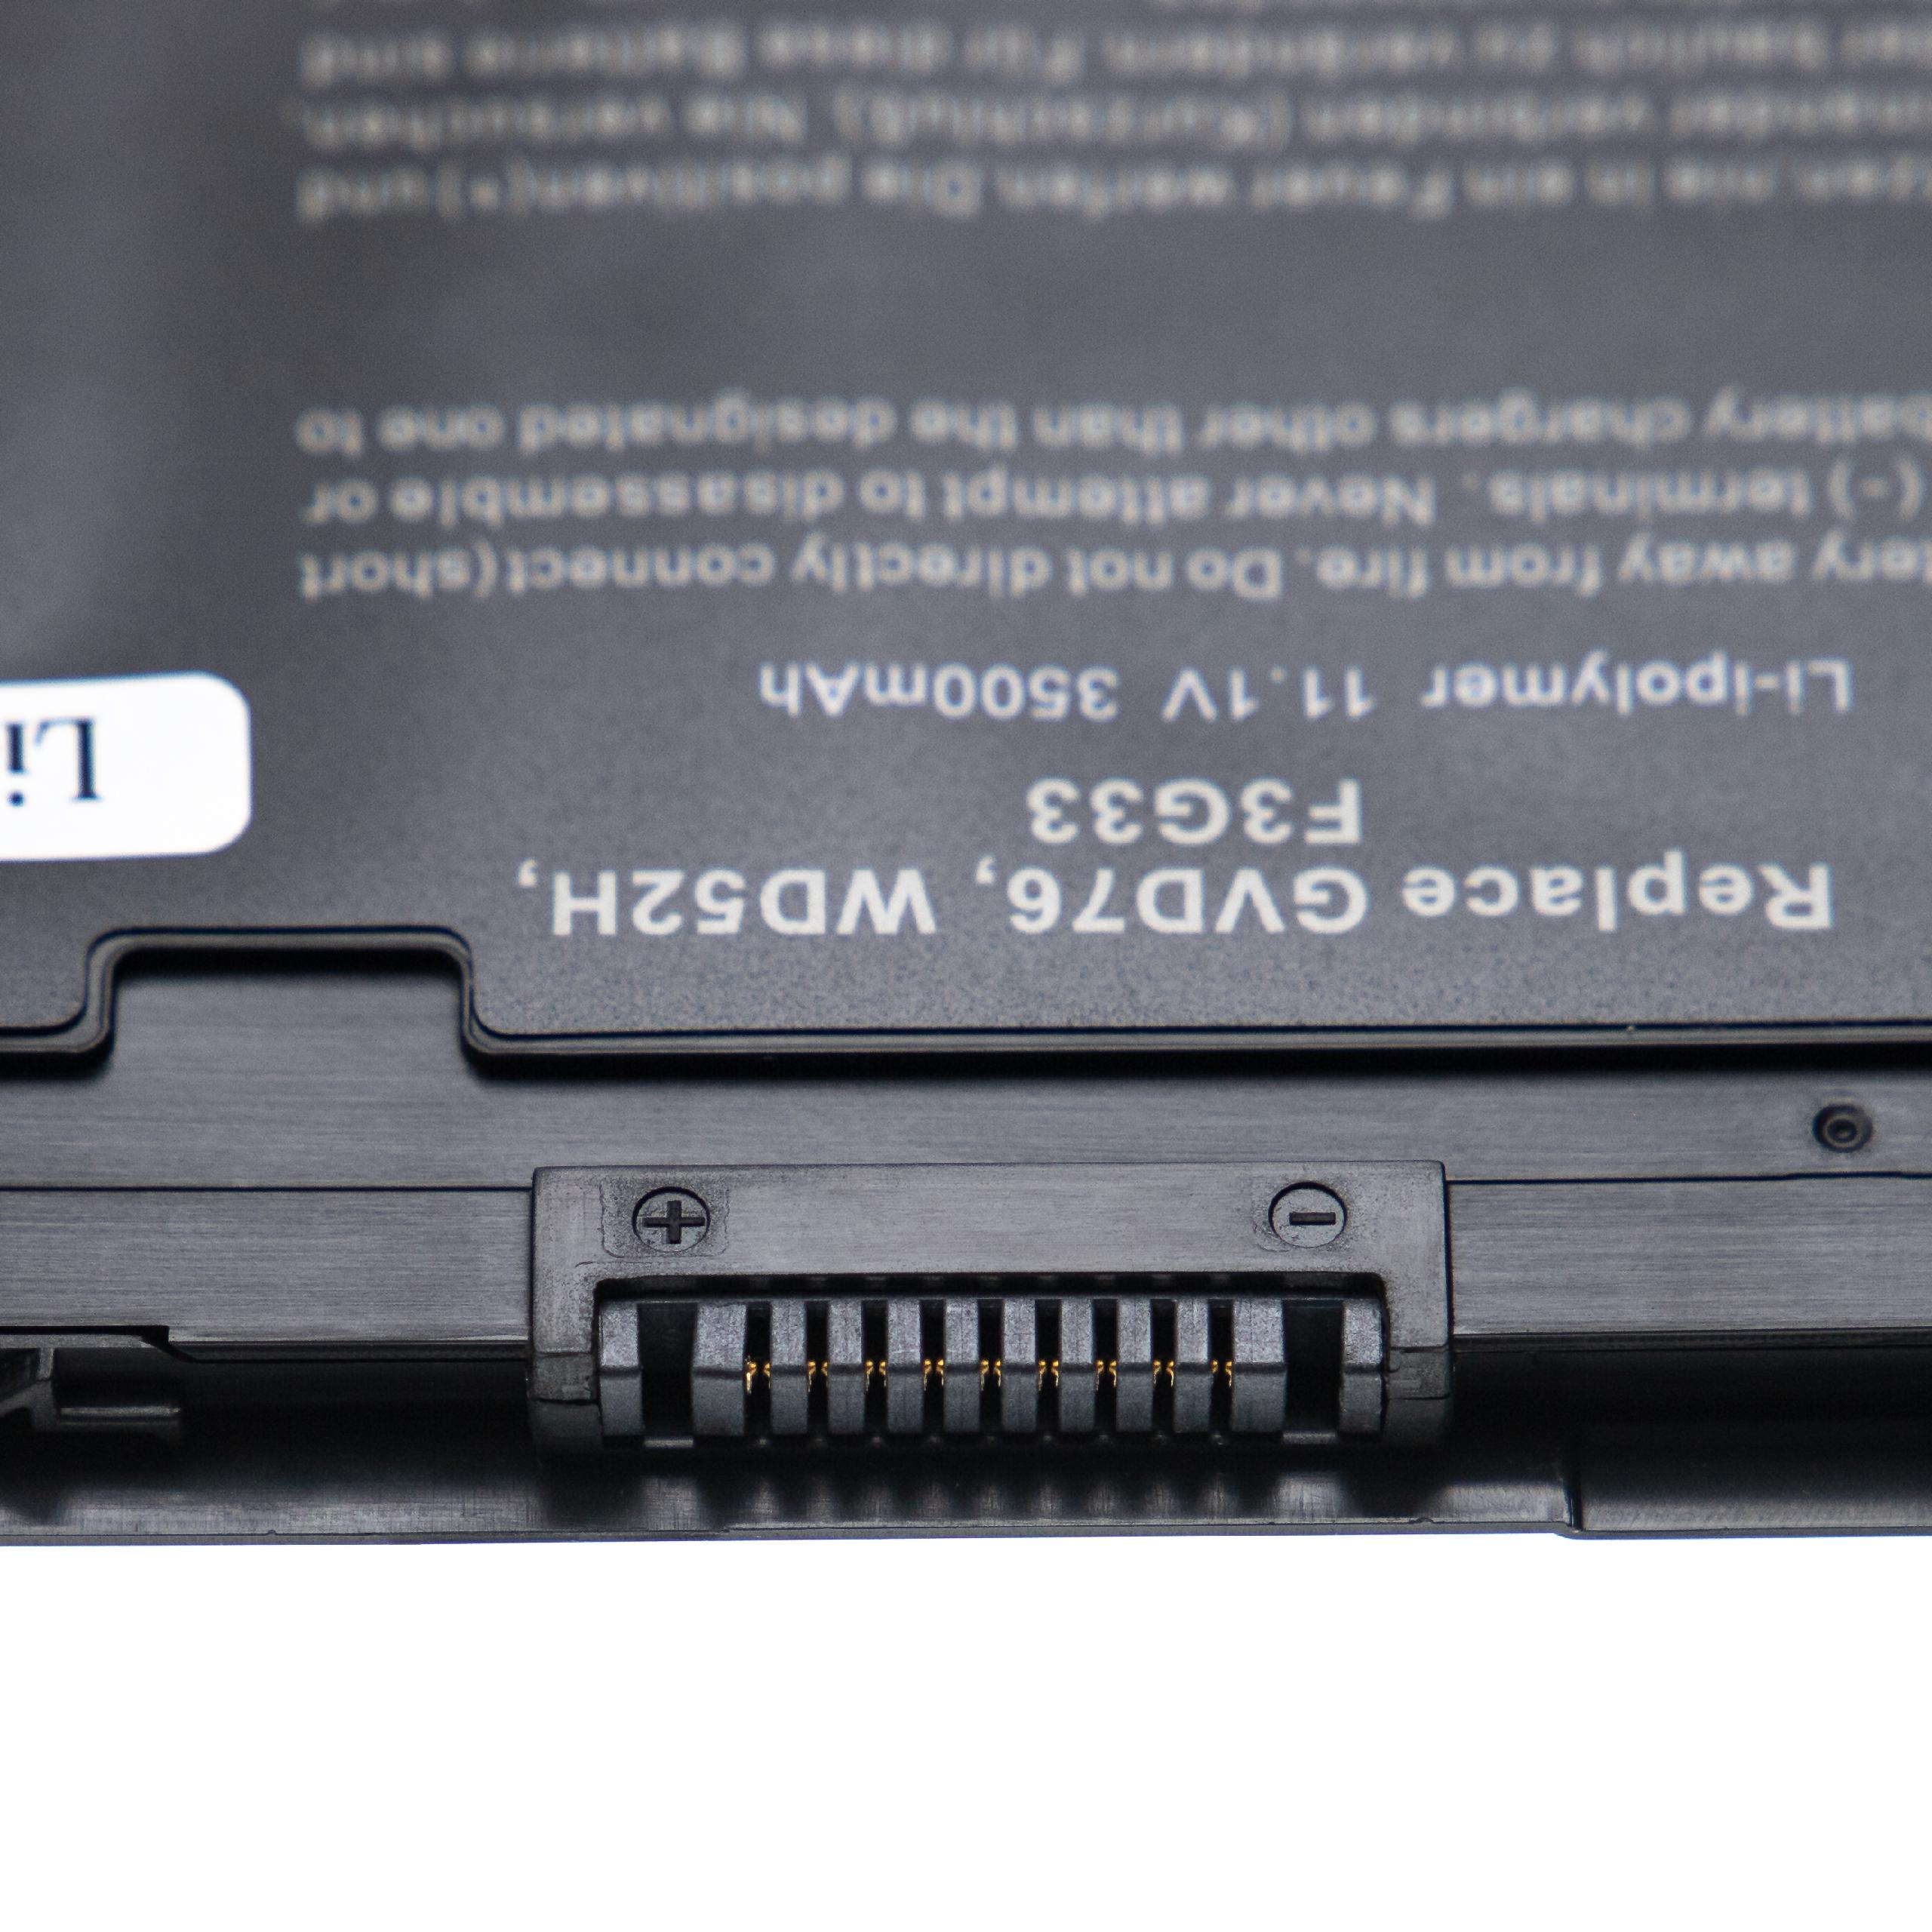 Akumulator do laptopa zamiennik Dell 3G33, 0W57CV, 9C26T, 451-BBFW, 451-BBFX - 3500 mAh 11,1 V Li-Ion, czarny